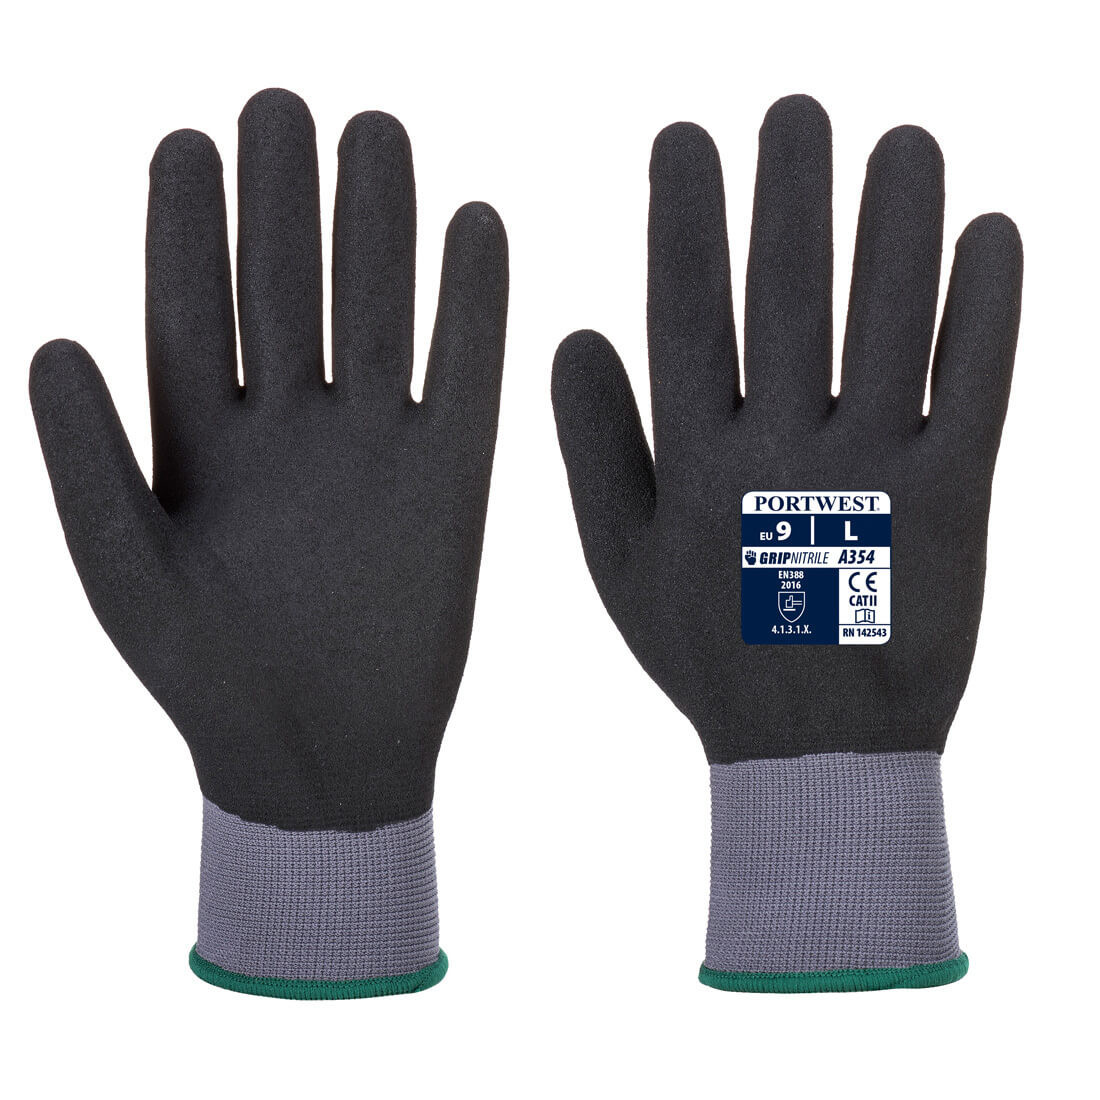 DermiFlex Ultra Pro Handschuh - PU/Nitrilk beschichtet - Arbeitschutz